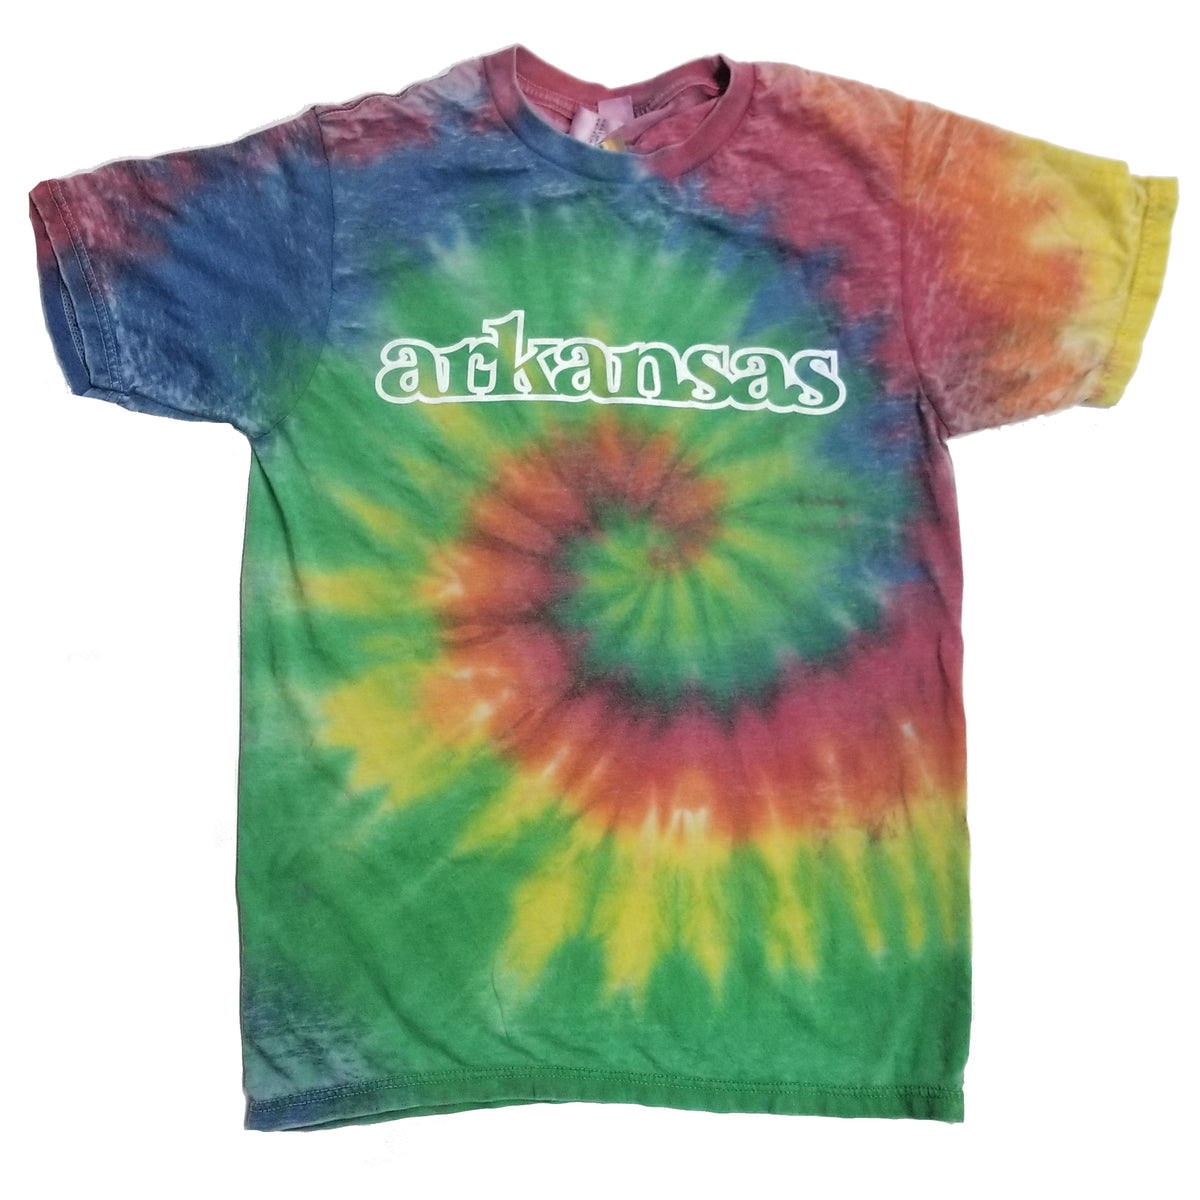 Arkansas Rainbow Tie-Dye T-Shirt